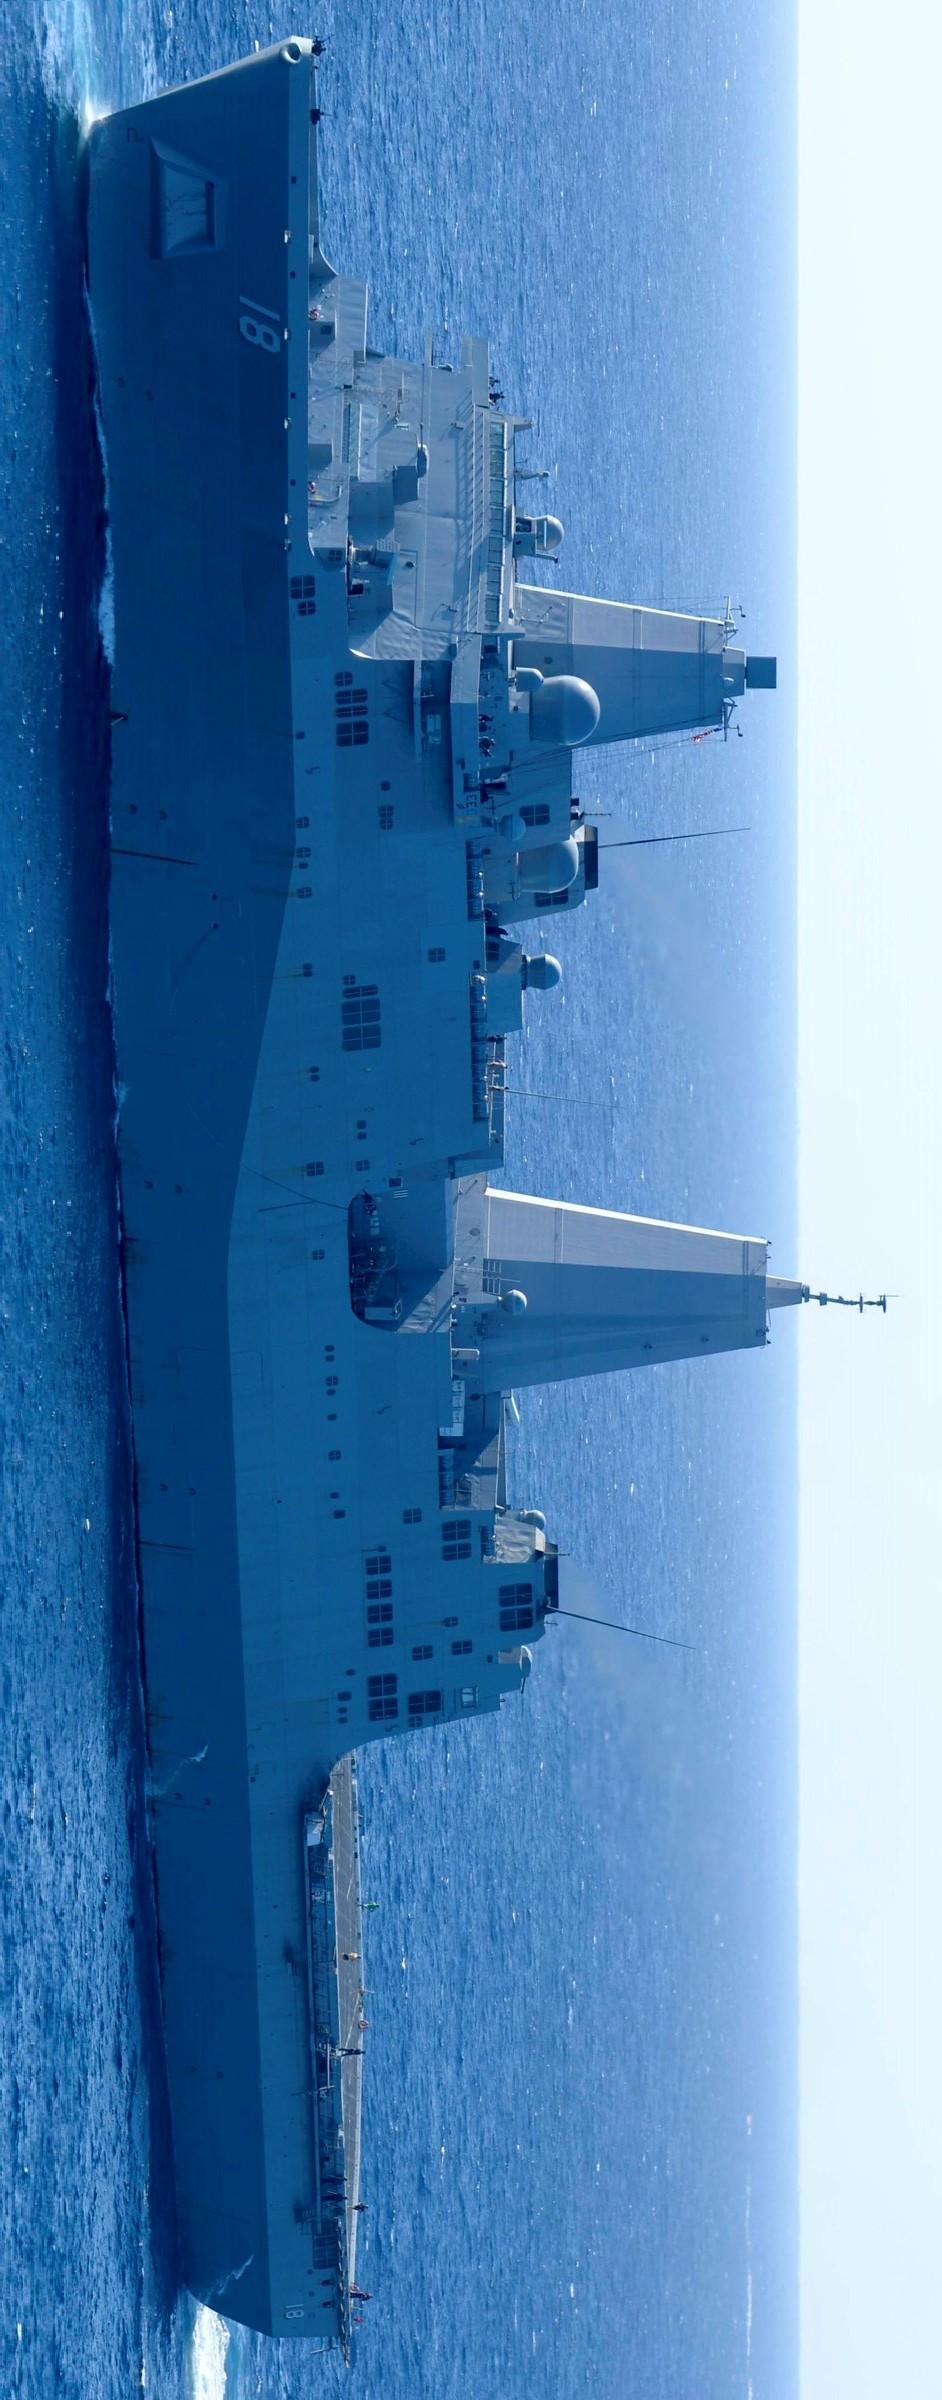 新奥尔良号(完胜核潜艇的超豪华渡轮 新奥尔良号船坞运输舰 百图图鉴)